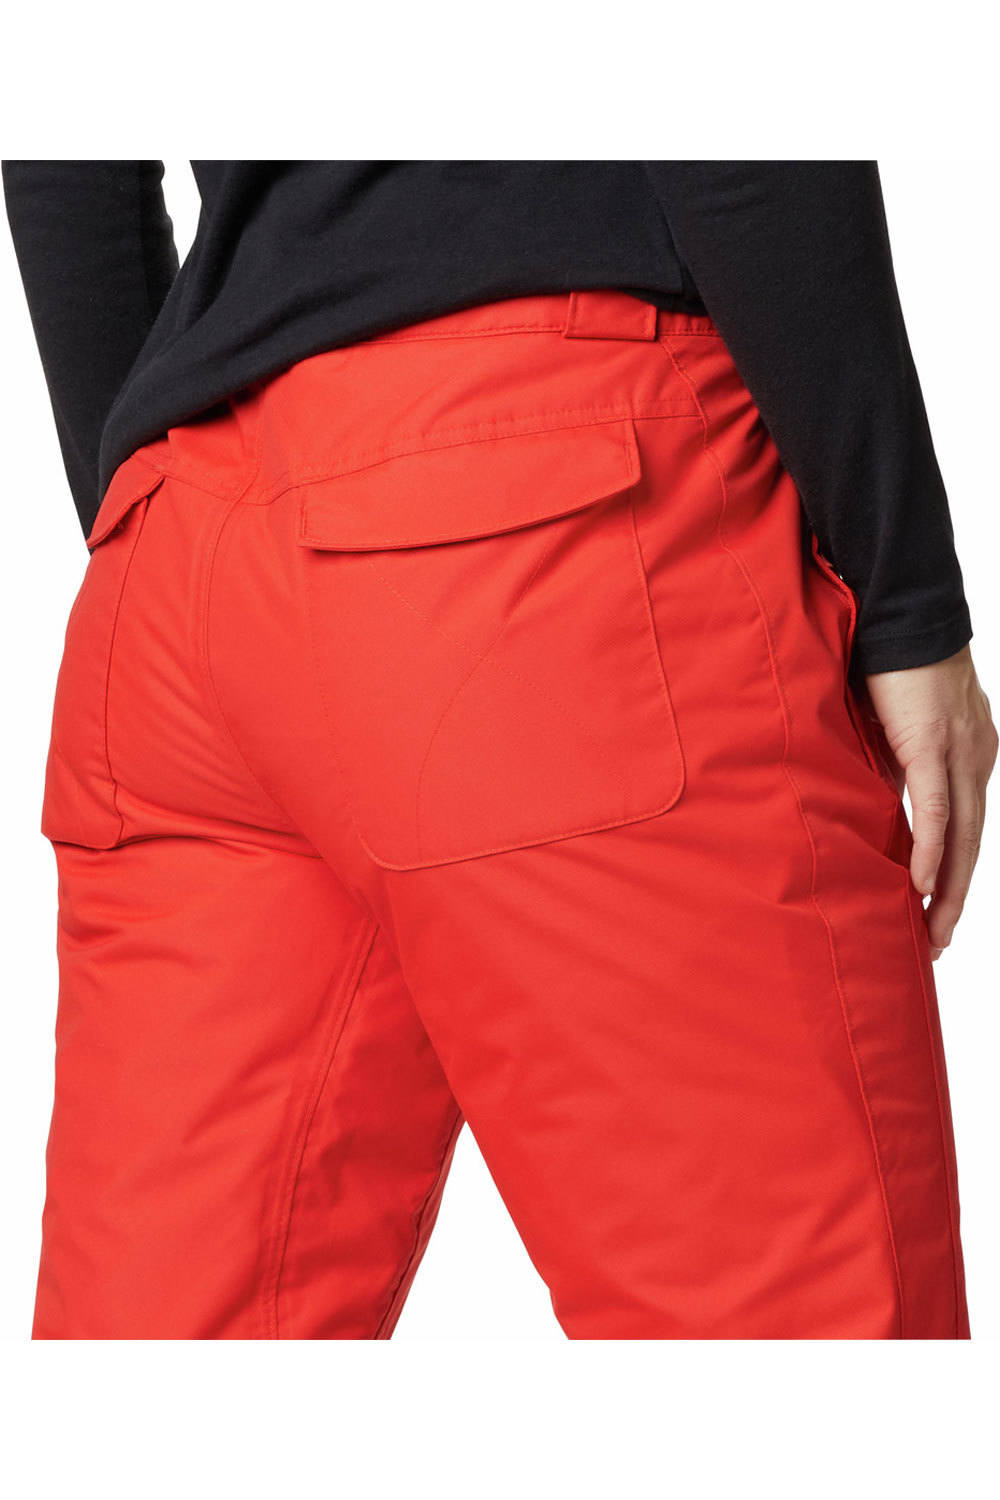 Columbia pantalones esquí mujer Bugaboo  OH Pant 03